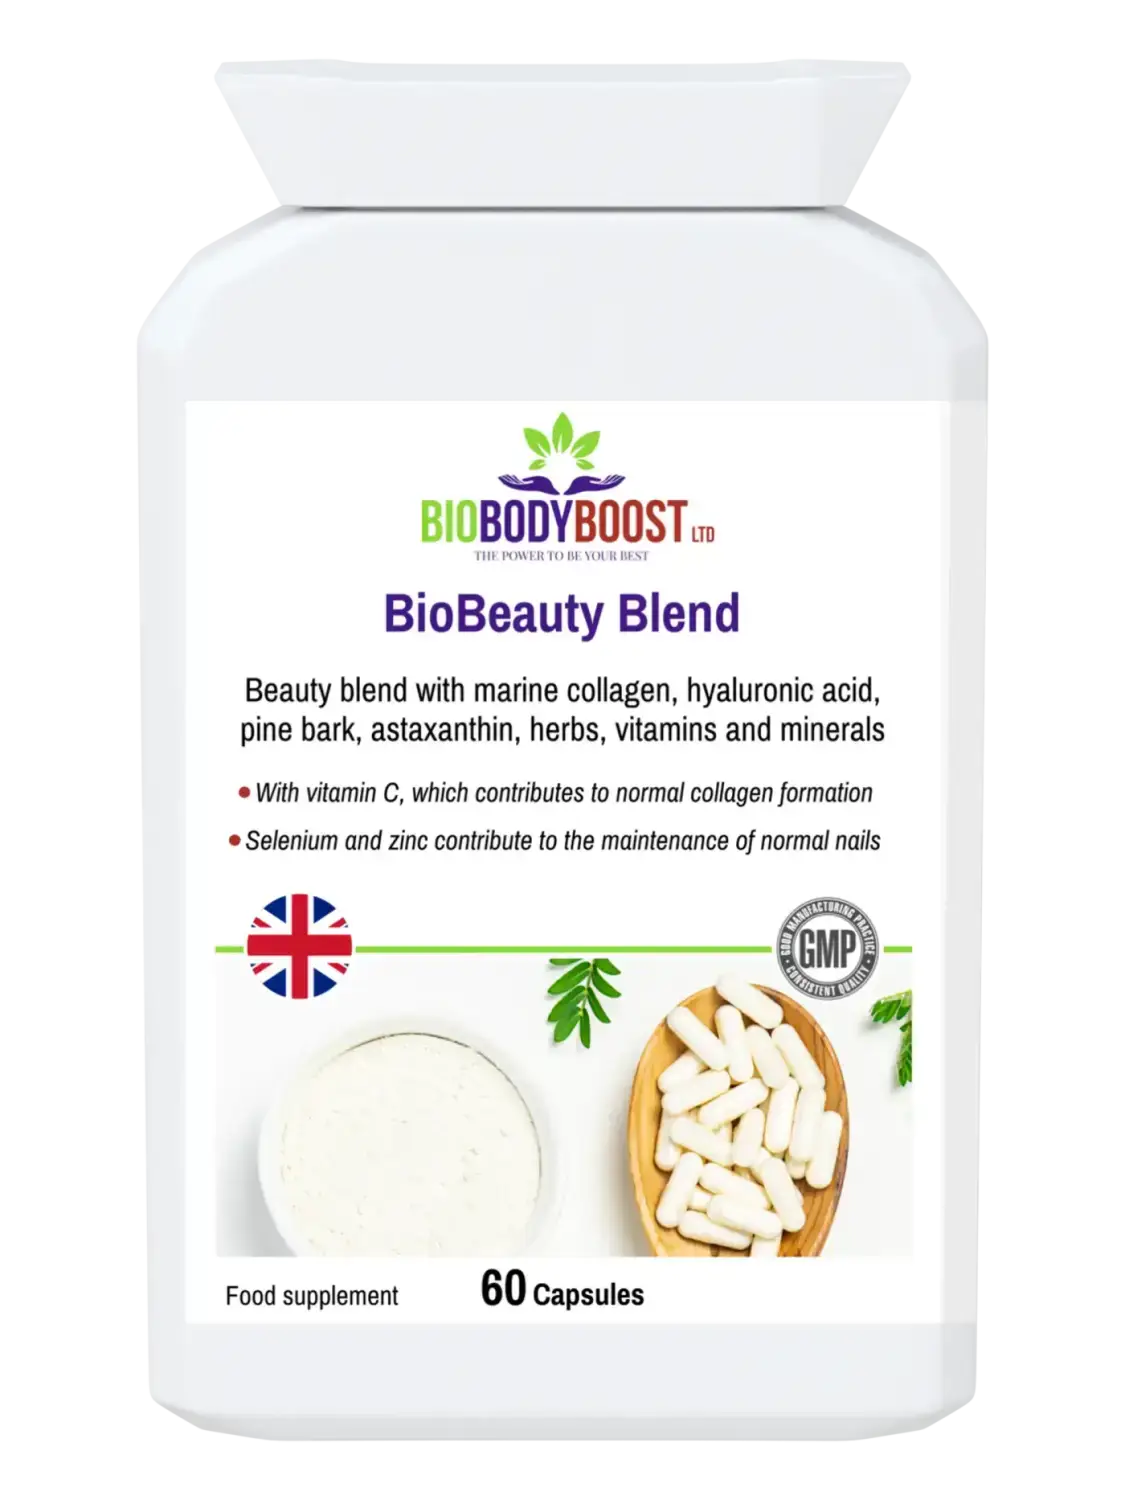 BioBeauty Blend - Marine Collagen Complex - Vitamins & Supplements oxidative